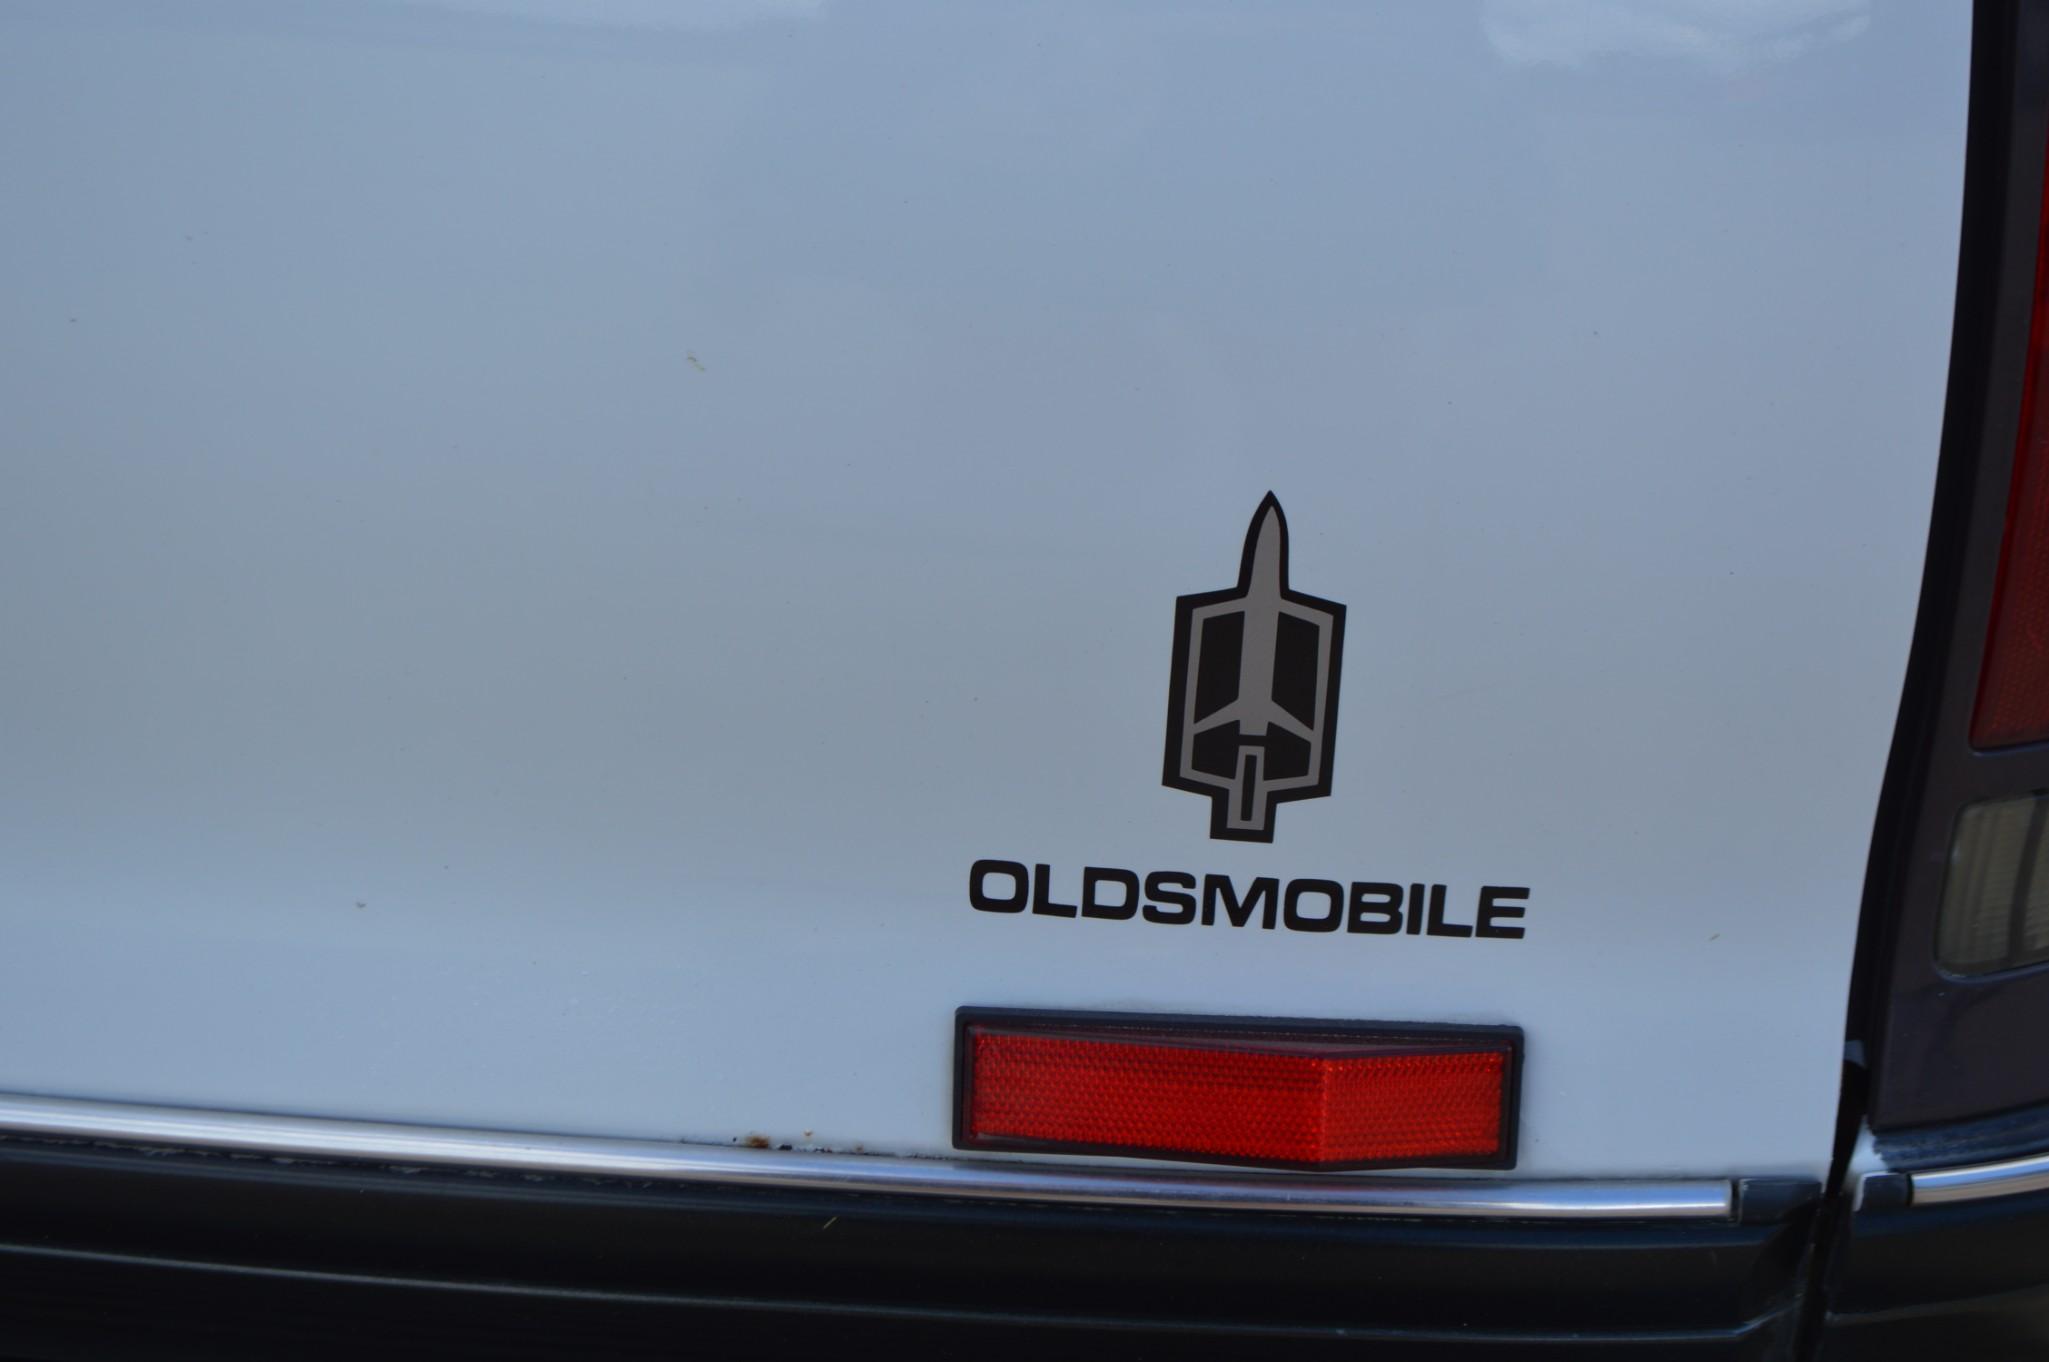 1991 Oldsmobile Custom Cruiser Passenger Car